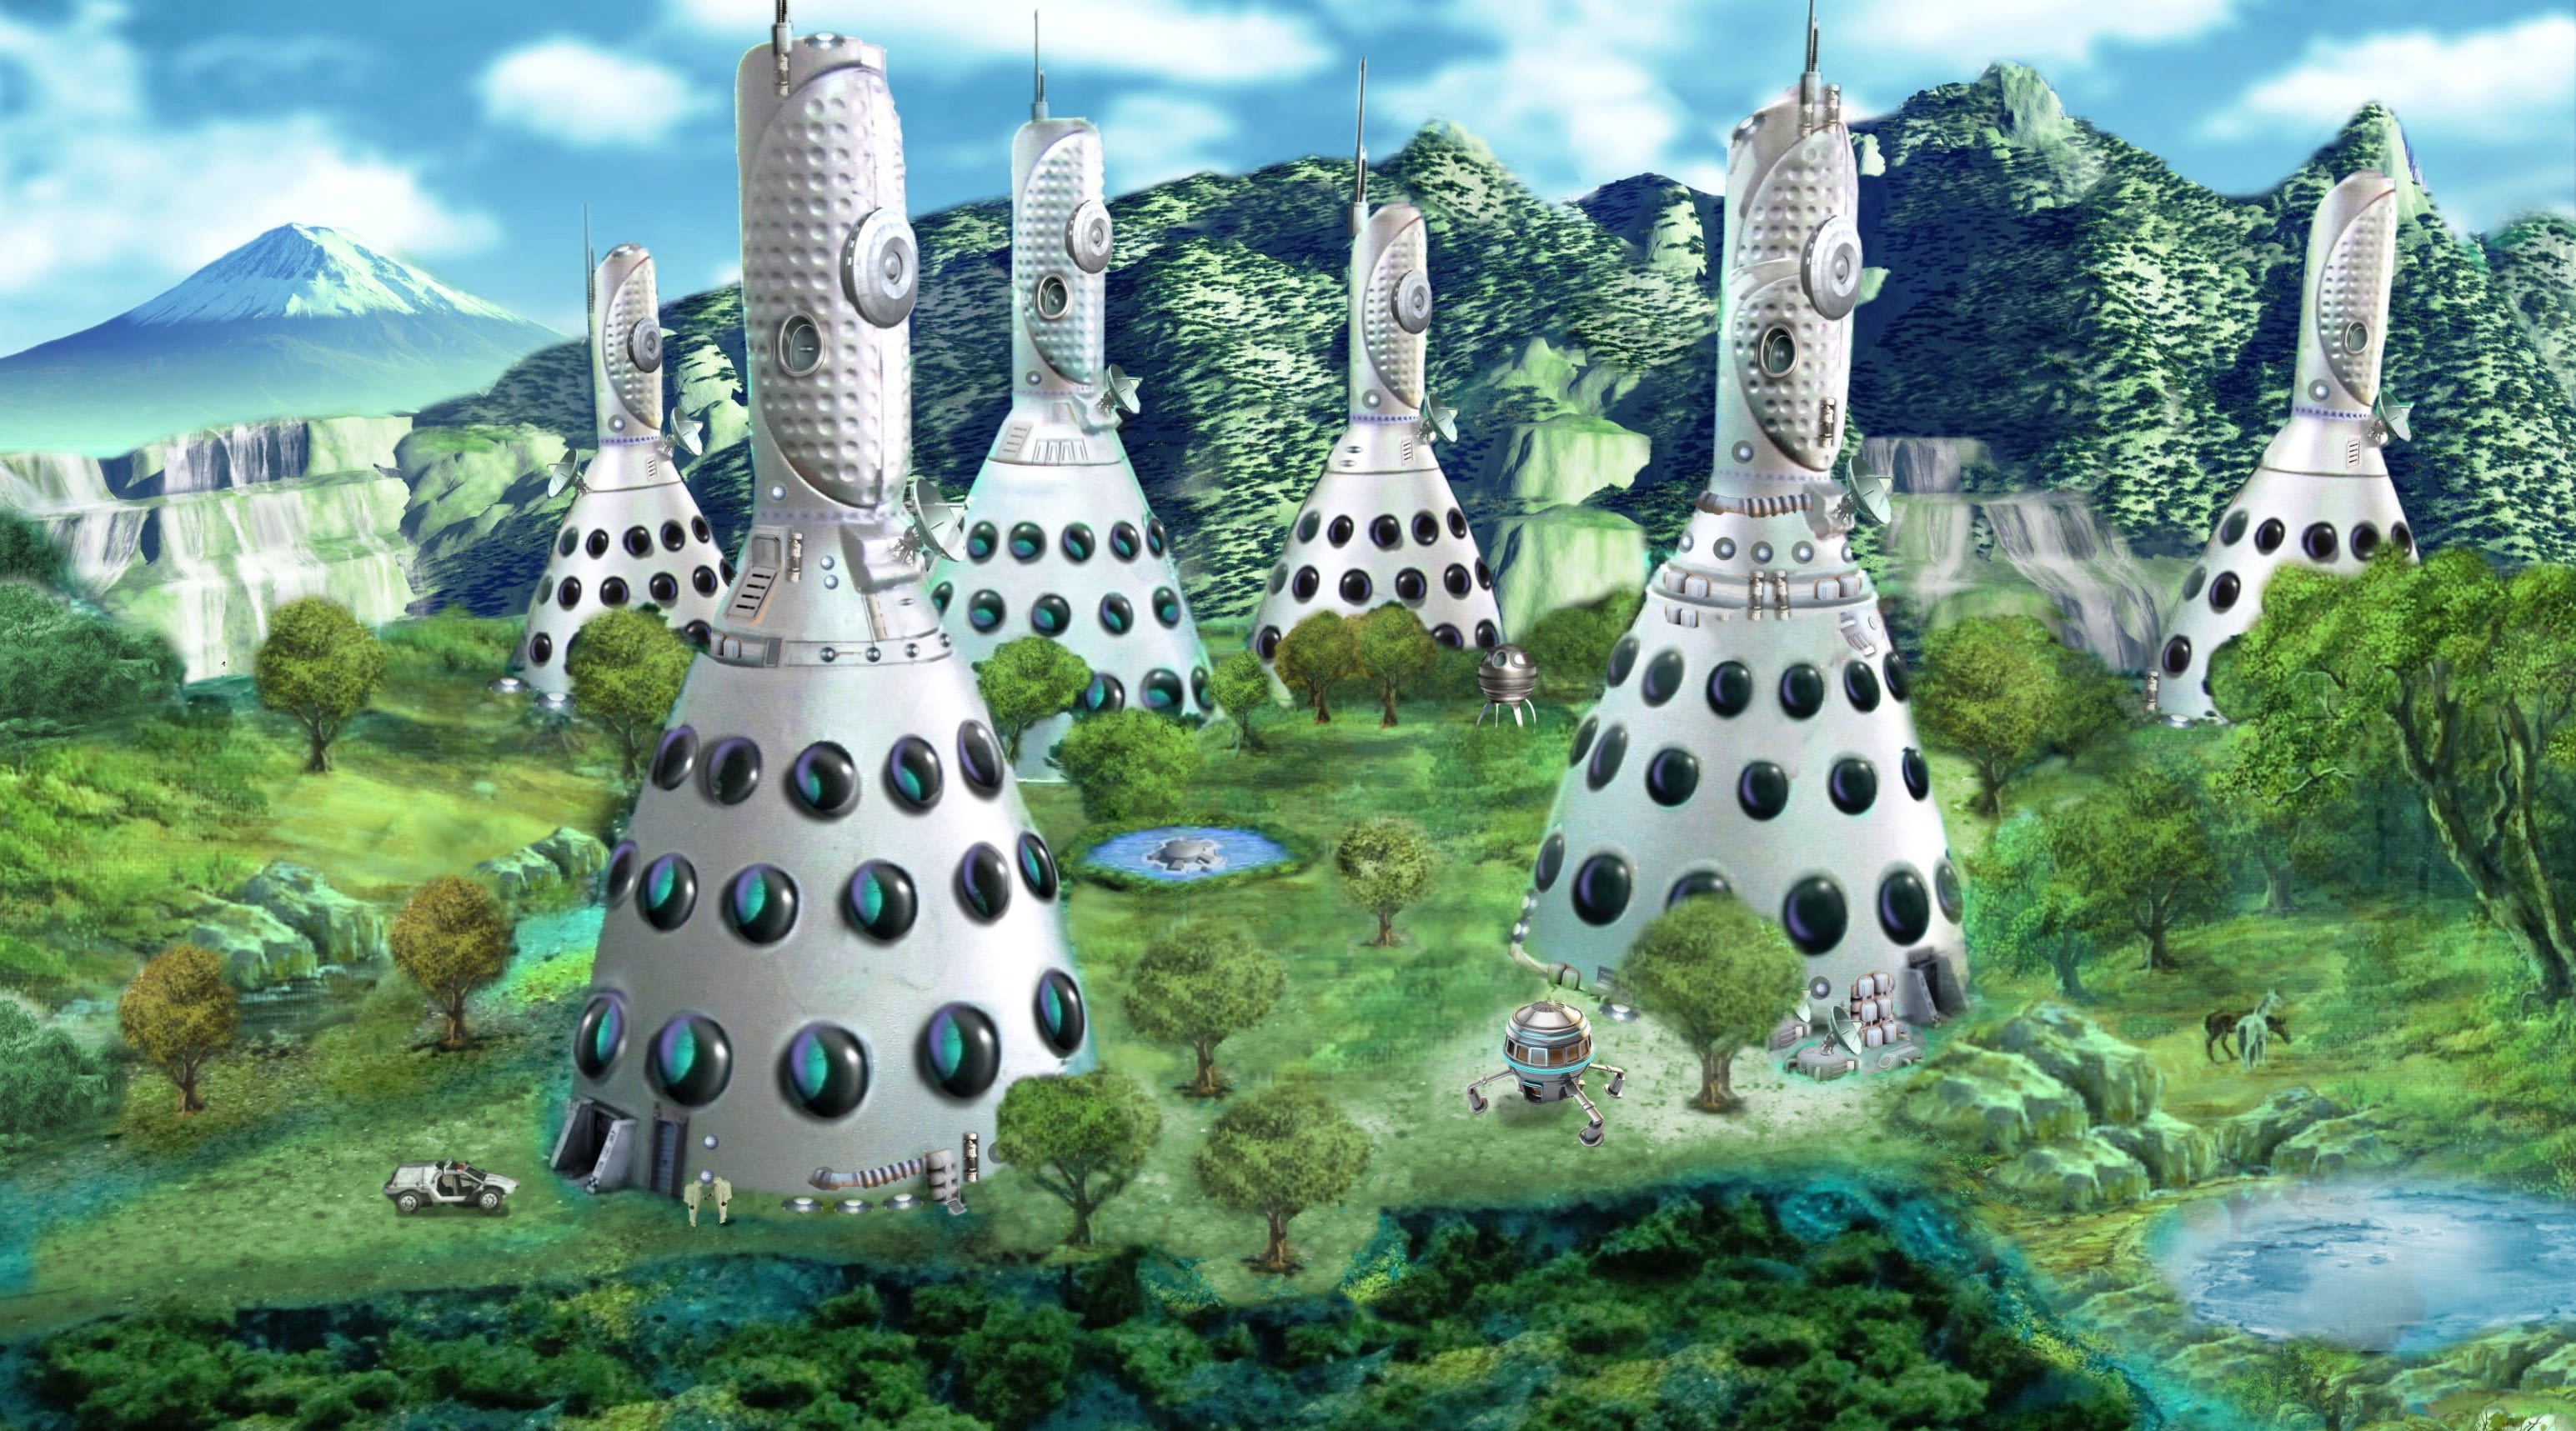 Utopia 2048: Journey into a regenerative future